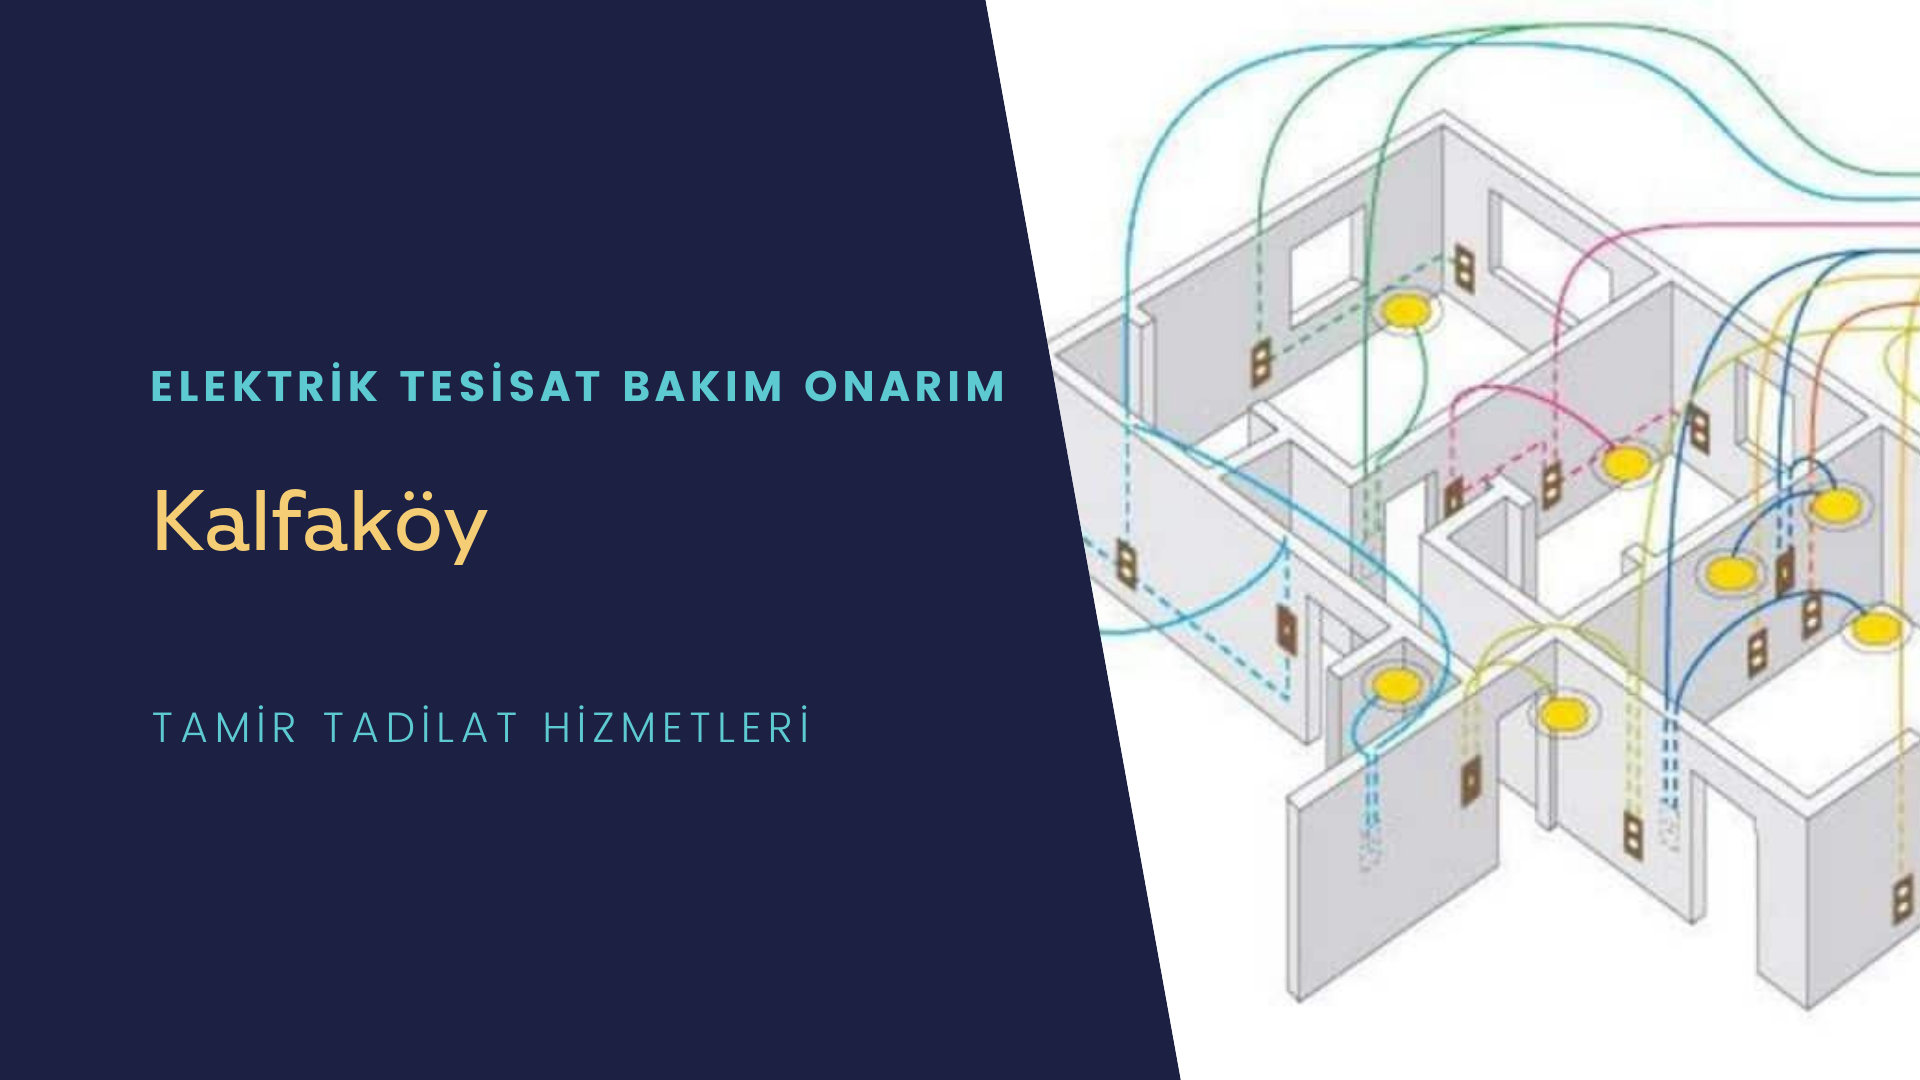 Kalfaköy'de elektrik tesisatı ustalarımı arıyorsunuz doğru adrestenizi Kalfaköy elektrik tesisatı ustalarımız 7/24 sizlere hizmet vermekten mutluluk duyar.